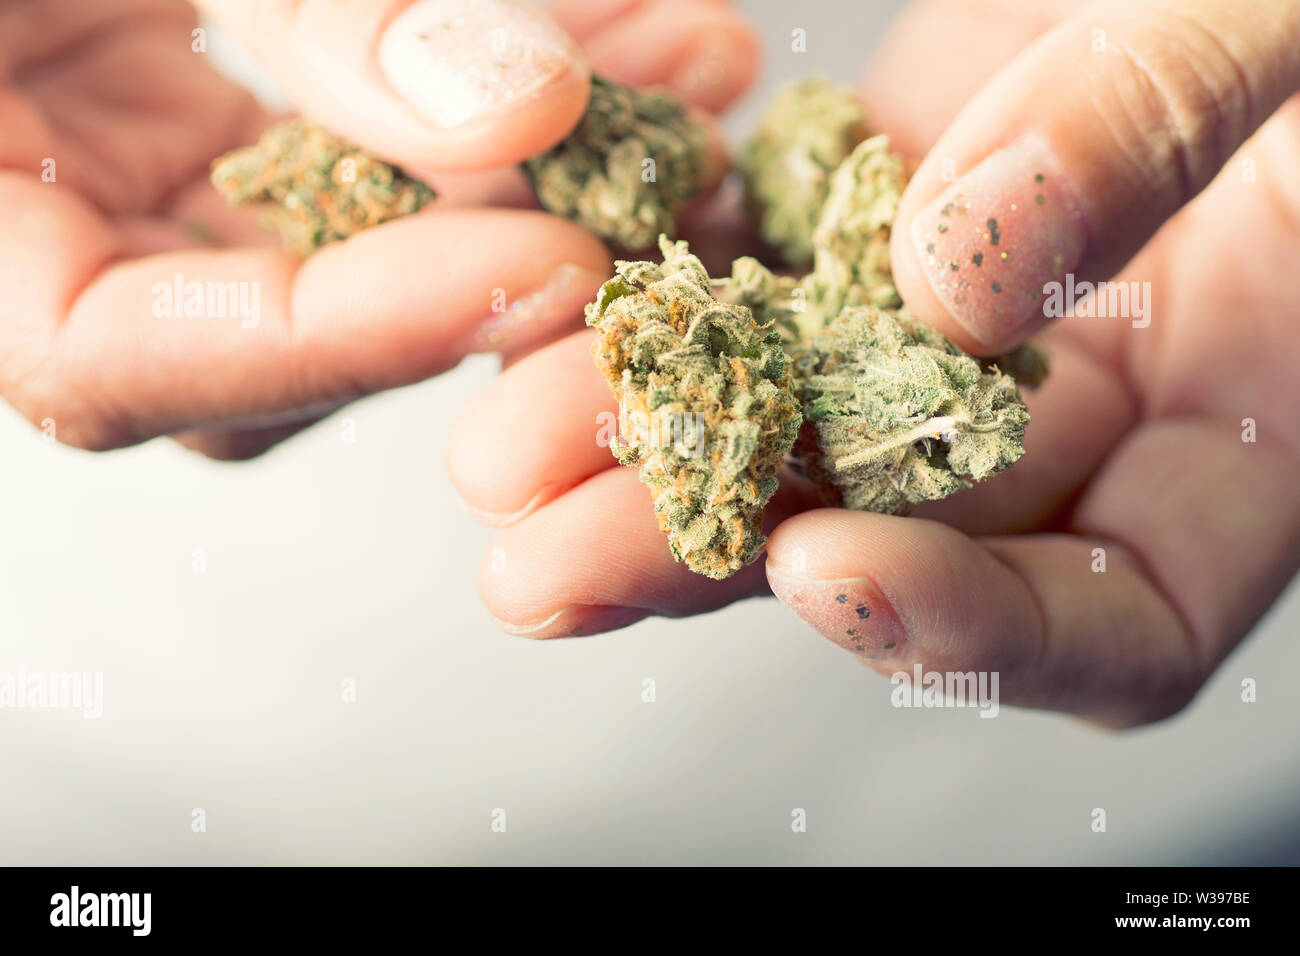 Mains tenant les bourgeons de cannabis, de la marijuana séchée, la lutte contre les mauvaises herbes Banque D'Images